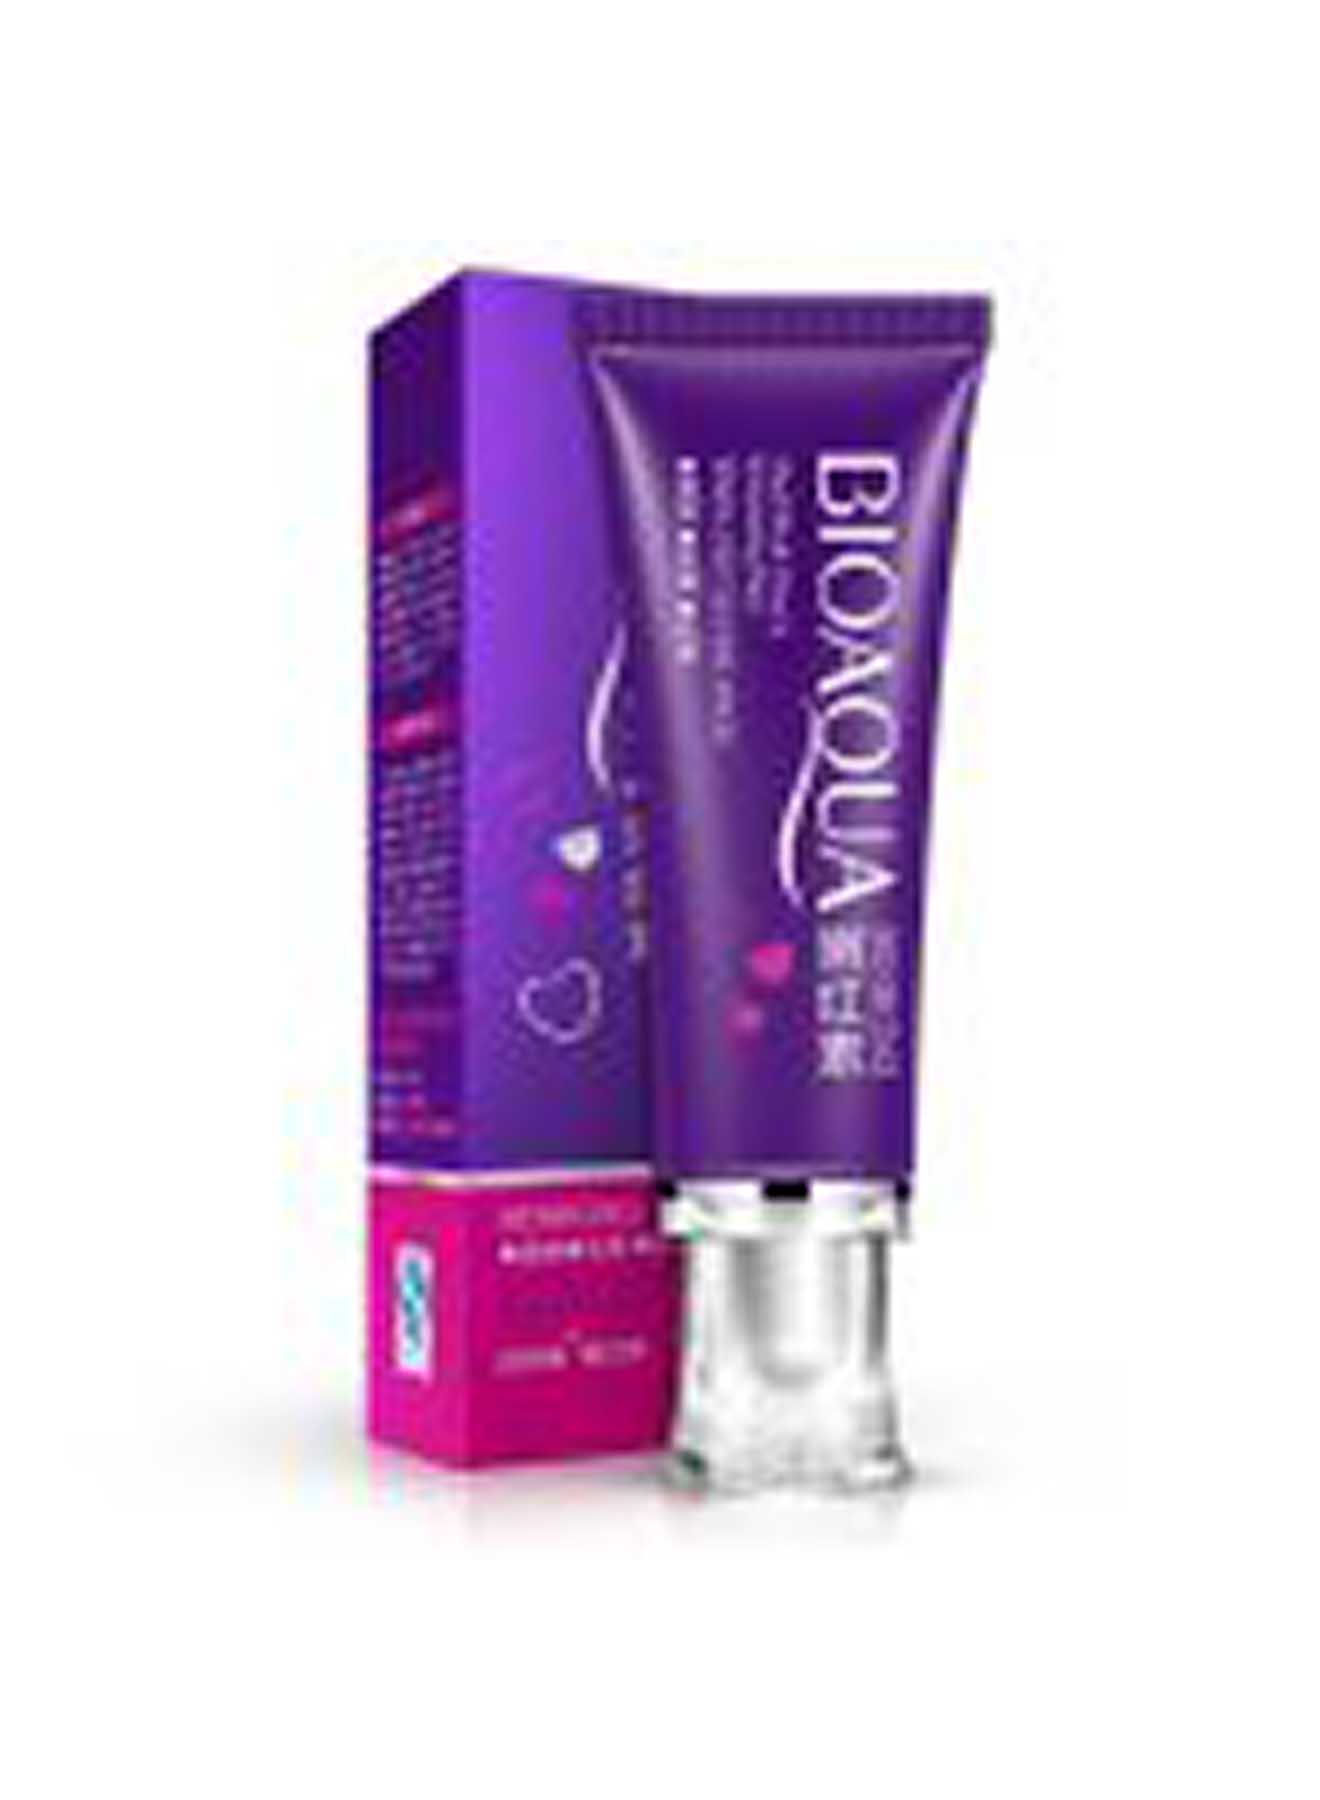 BioAQUA Nenhong Intimate Magic Skin Whitening Cream 30g Value Pack of 12 